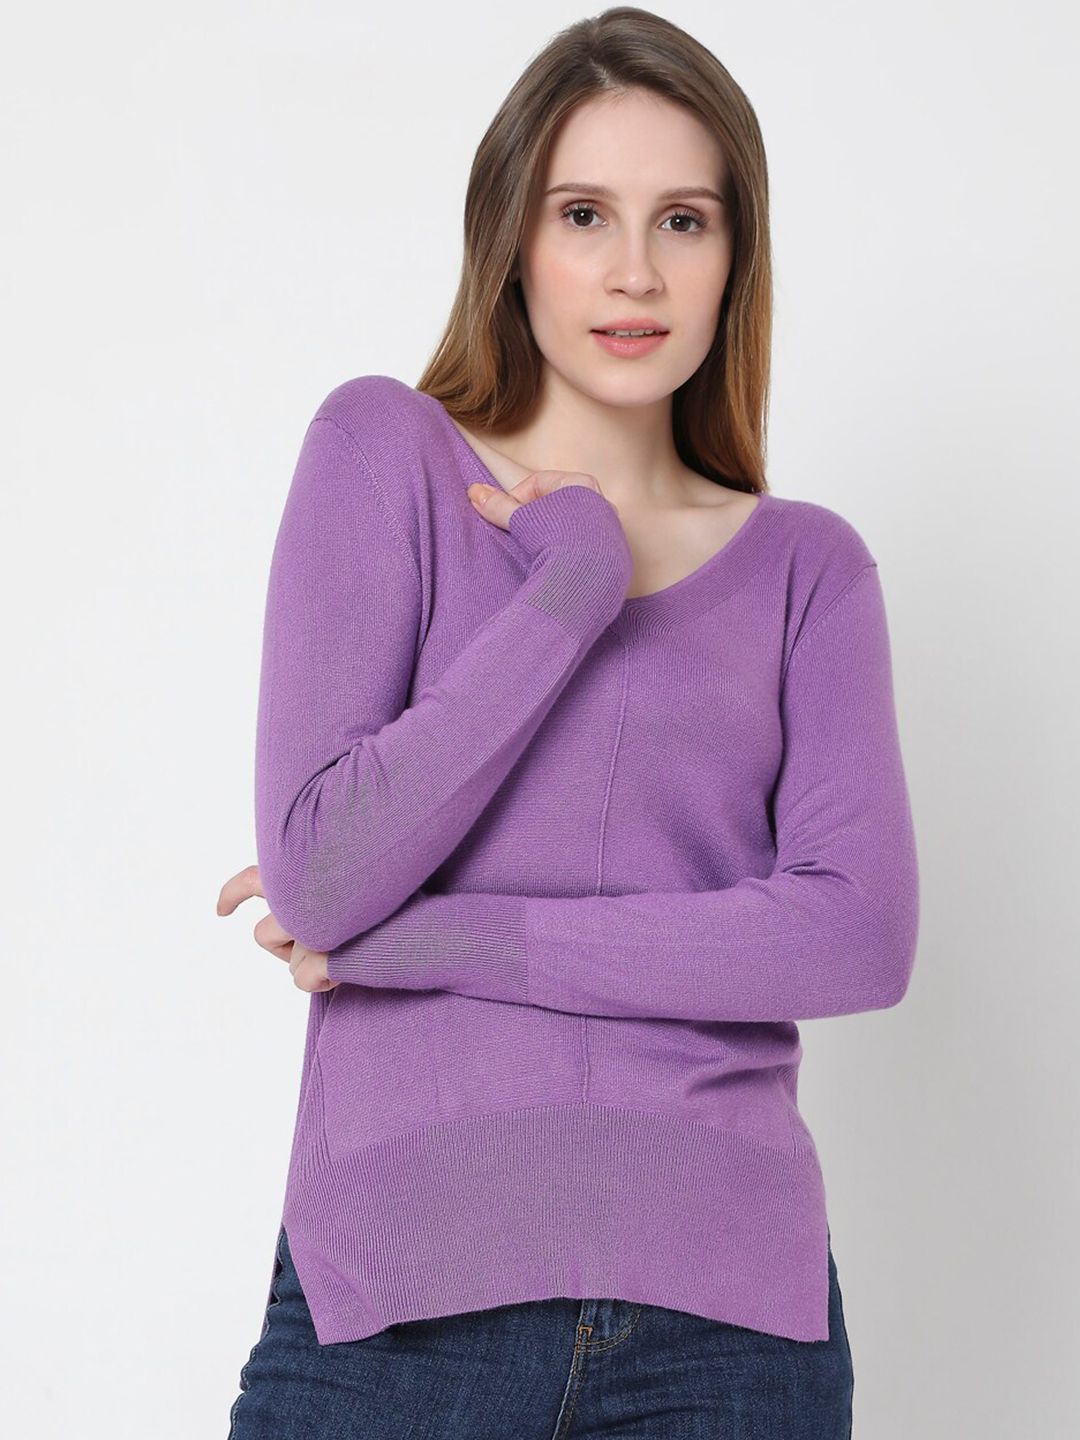 Vero Moda Women Purple Pullover Price in India